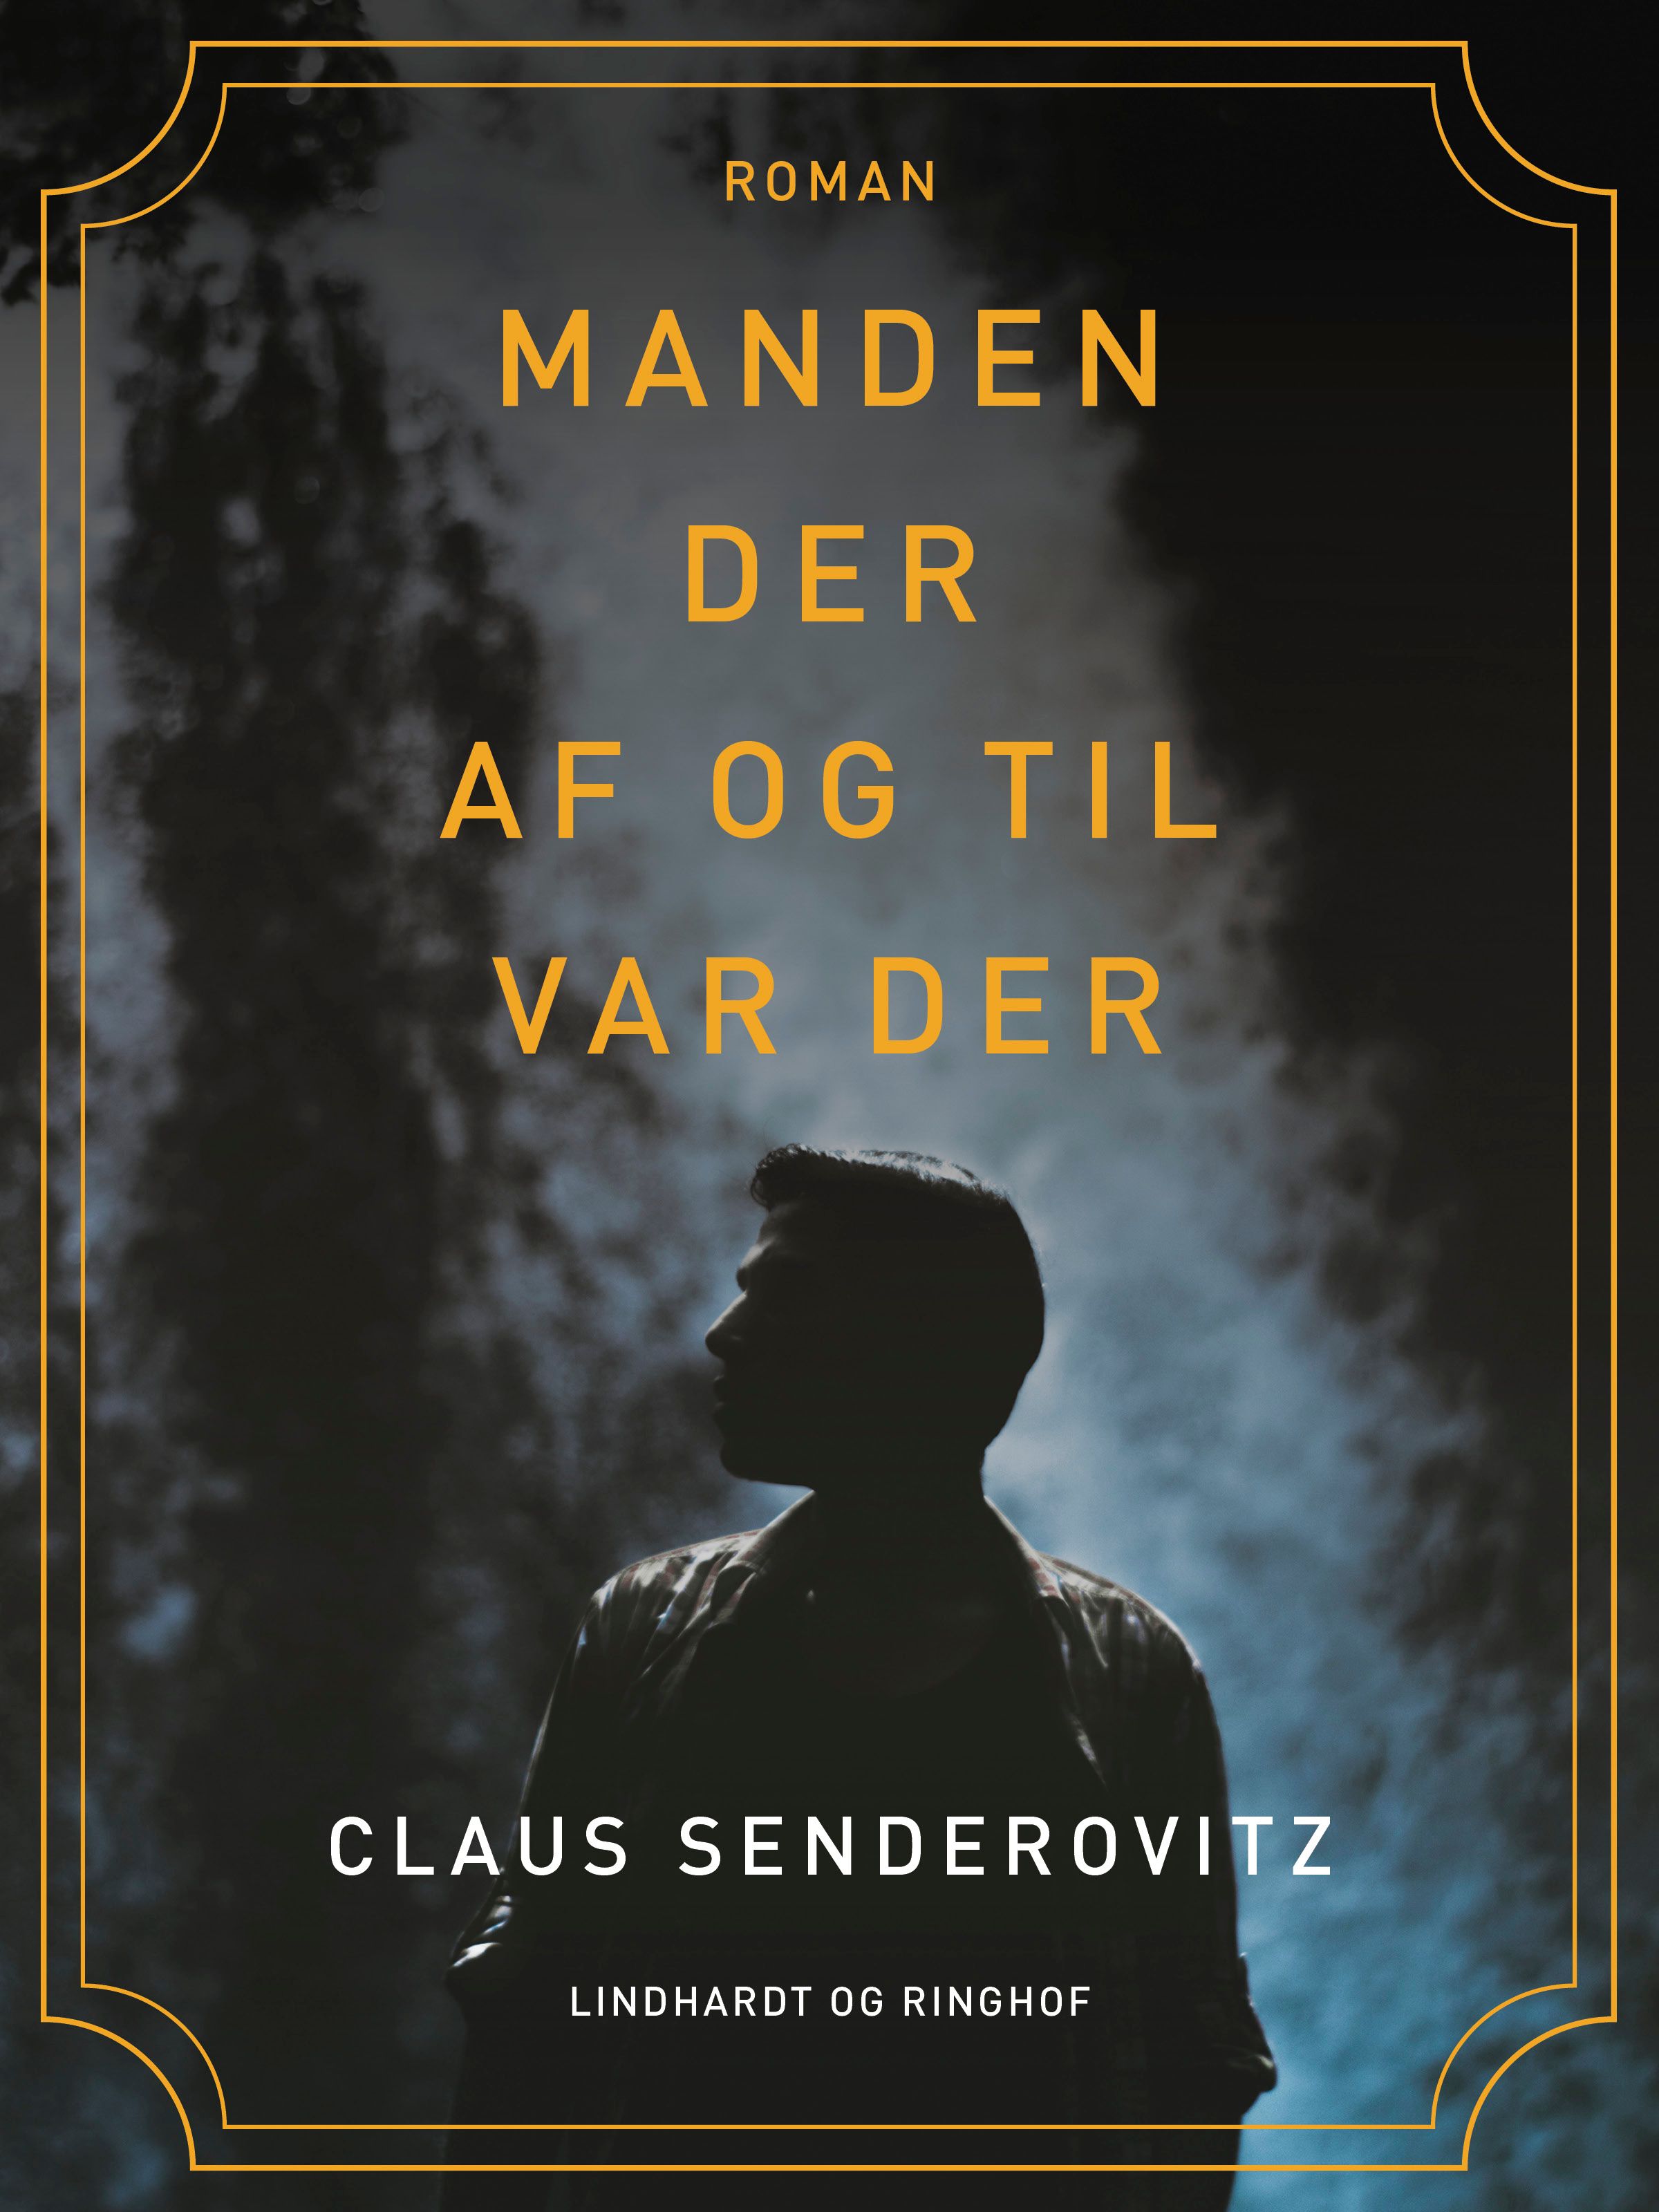 Manden der af og til var der, e-bok av Claus Senderovitz